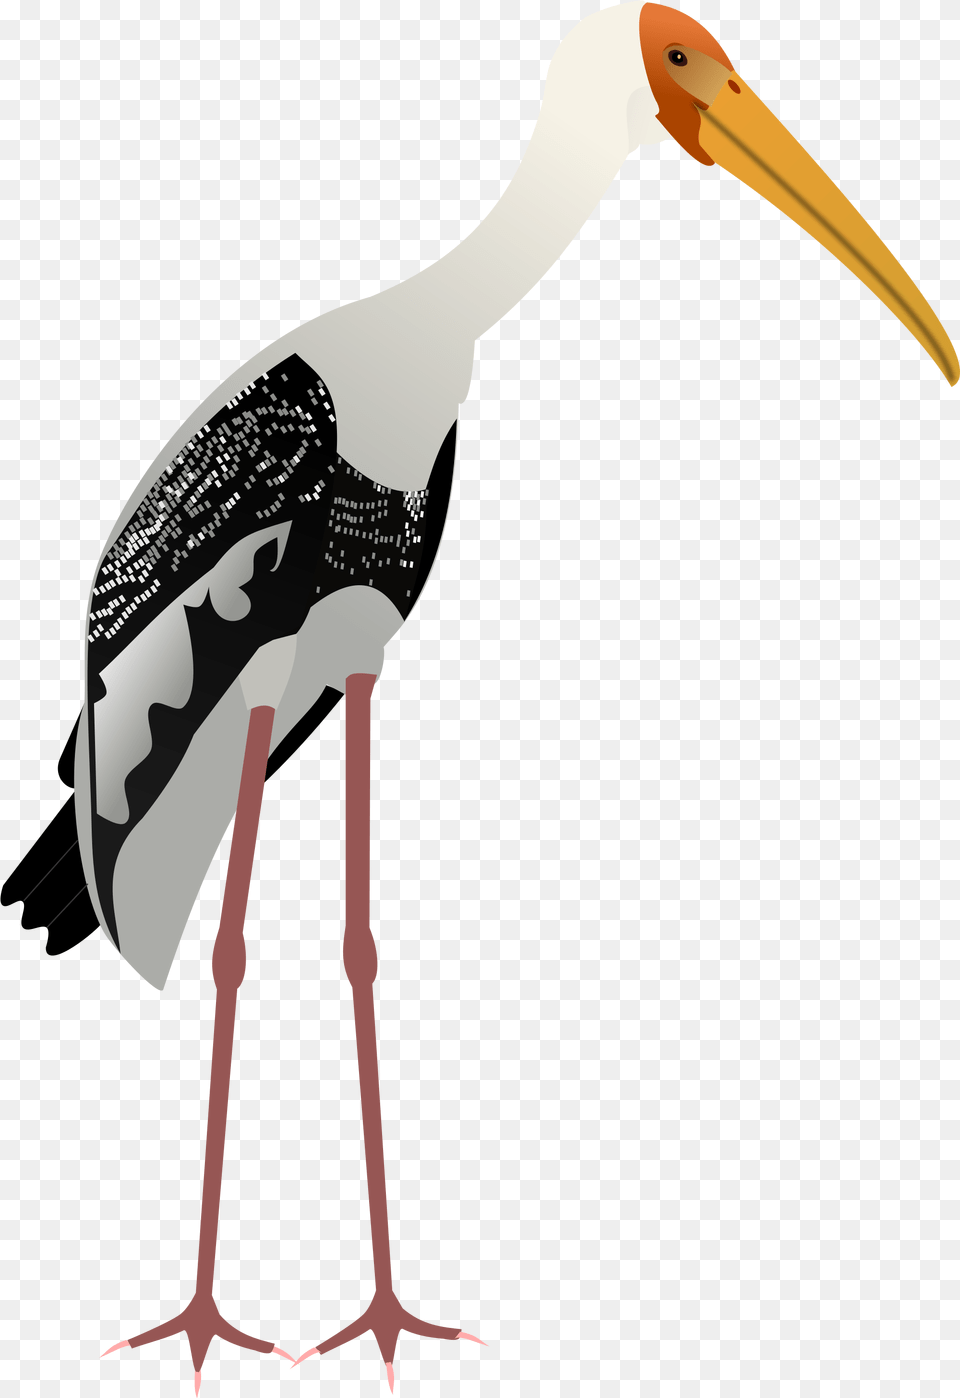 Painted Stork Vector Image Birds Painted Stork, Animal, Bird, Waterfowl, Beak Free Png